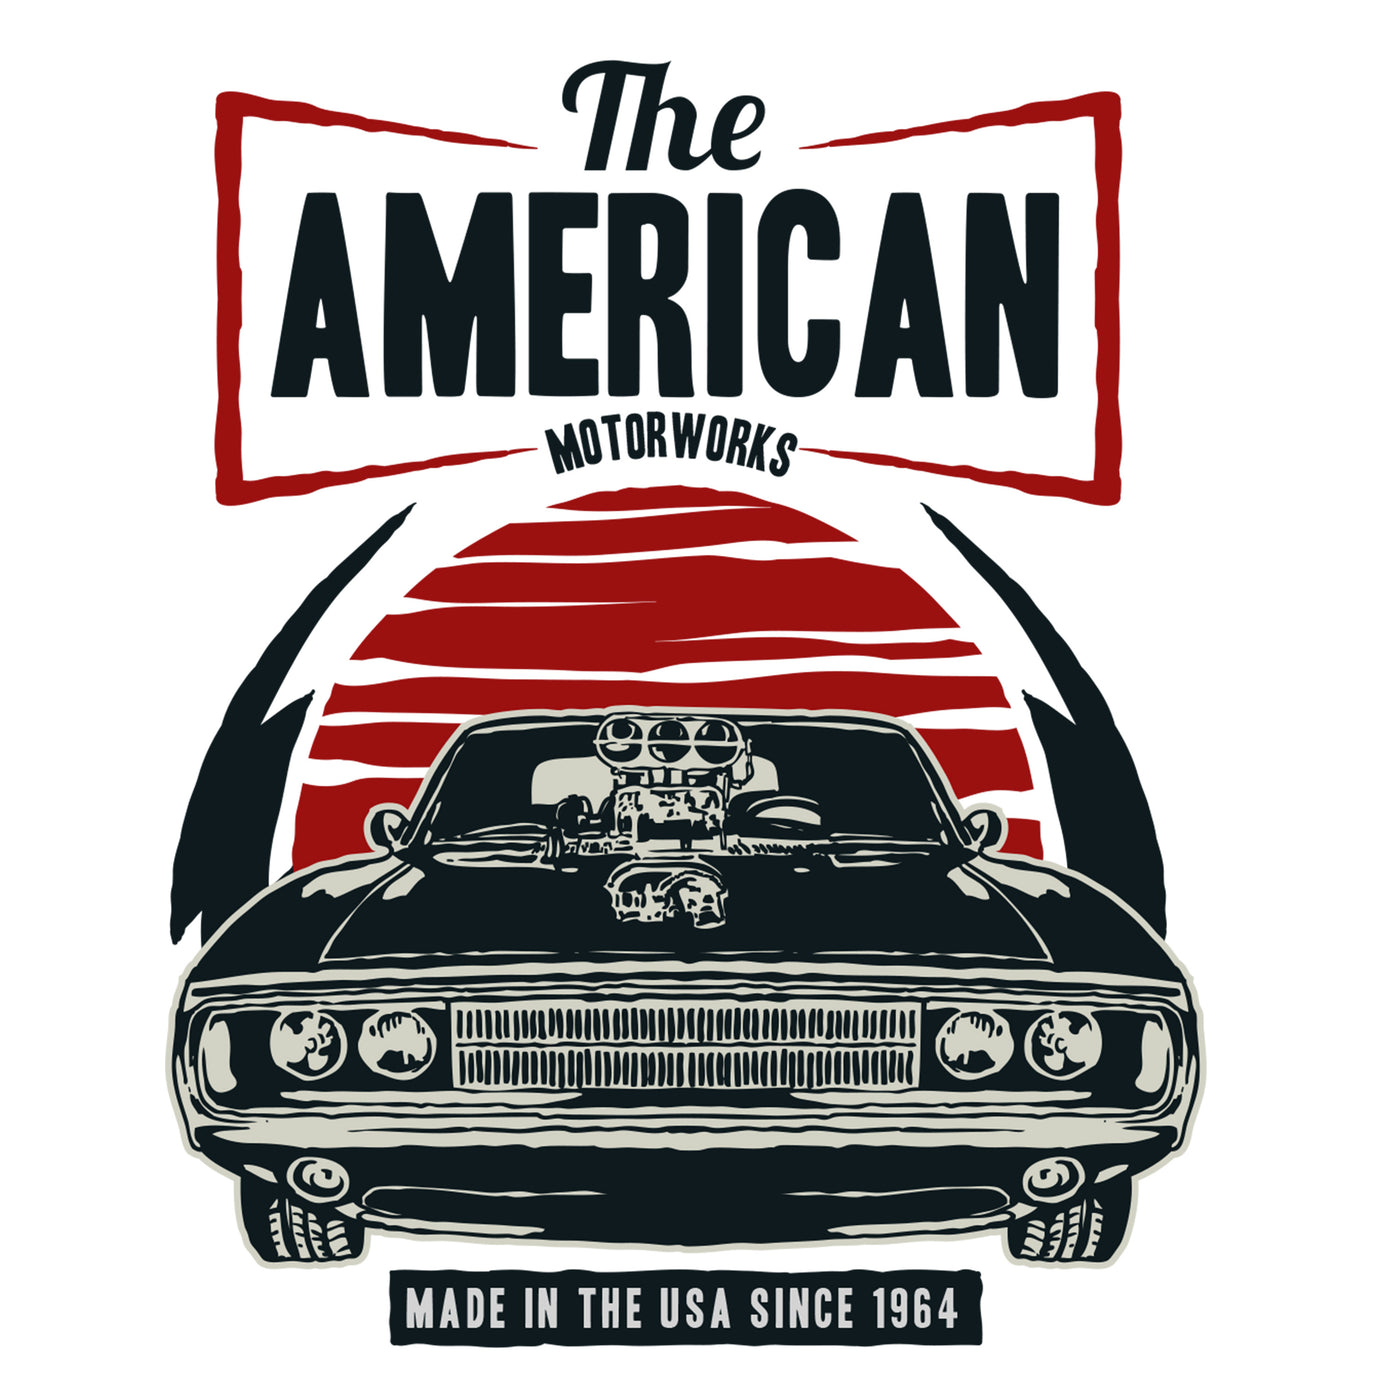 The American Motorworks